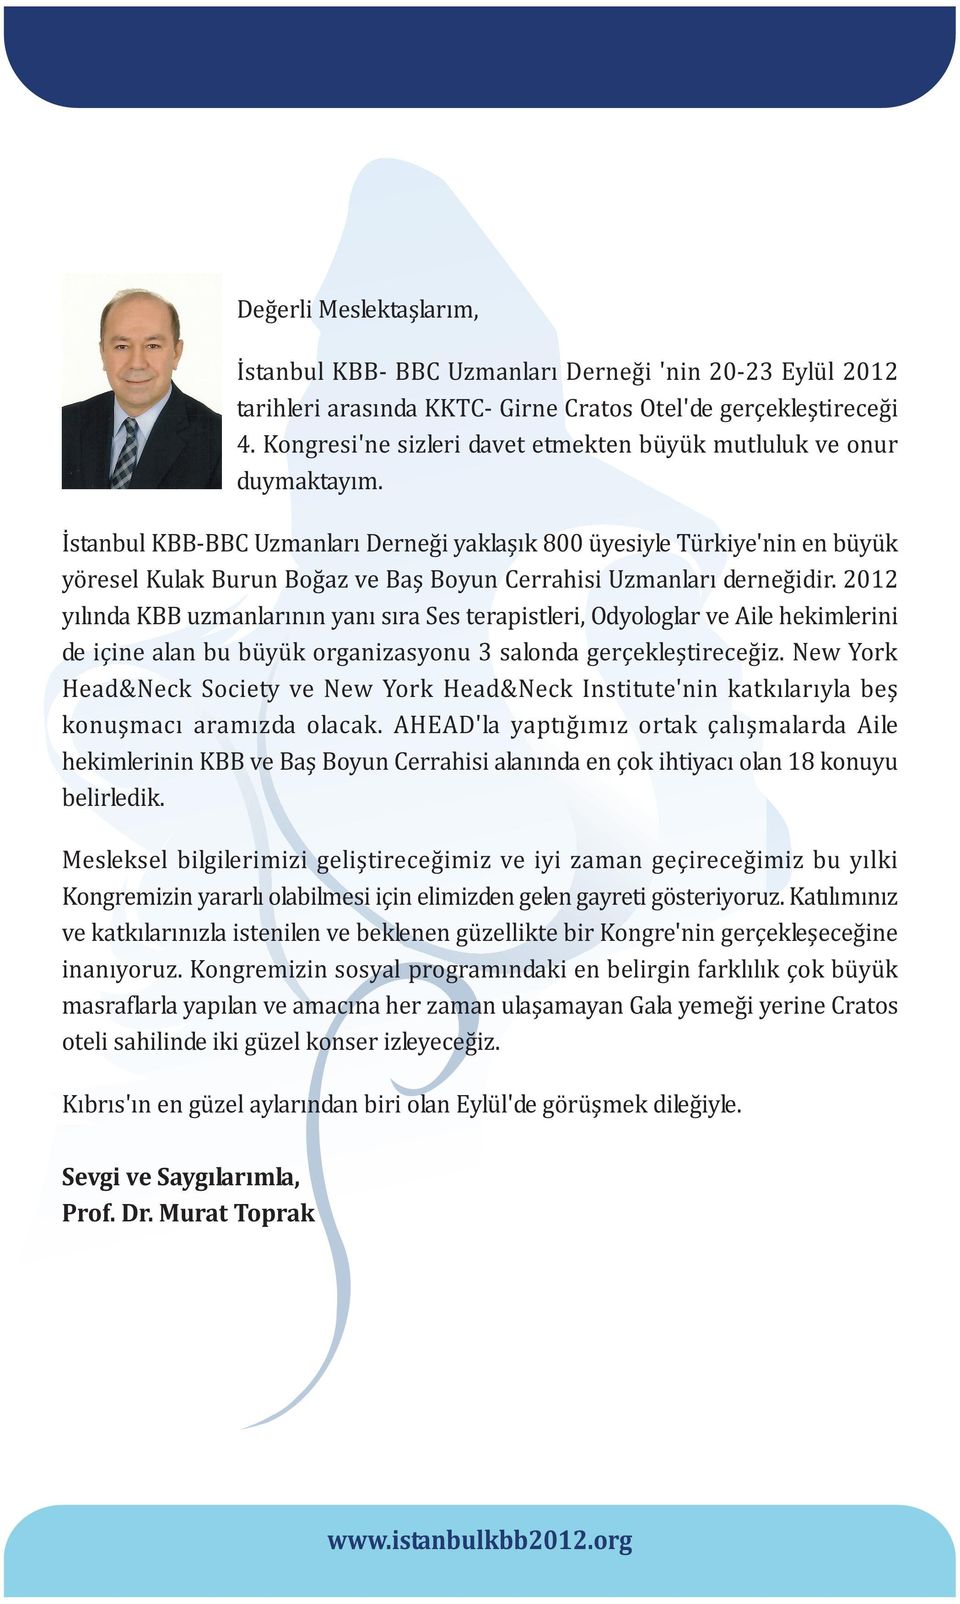 Ýstanbul KBB-BBC Uzmanlarý Derneði yaklaþýk 800 üyesiyle Türkiye'nin en büyük yöresel Kulak Burun Boðaz ve Baþ Boyun Cerrahisi Uzmanlarý derneðidir.